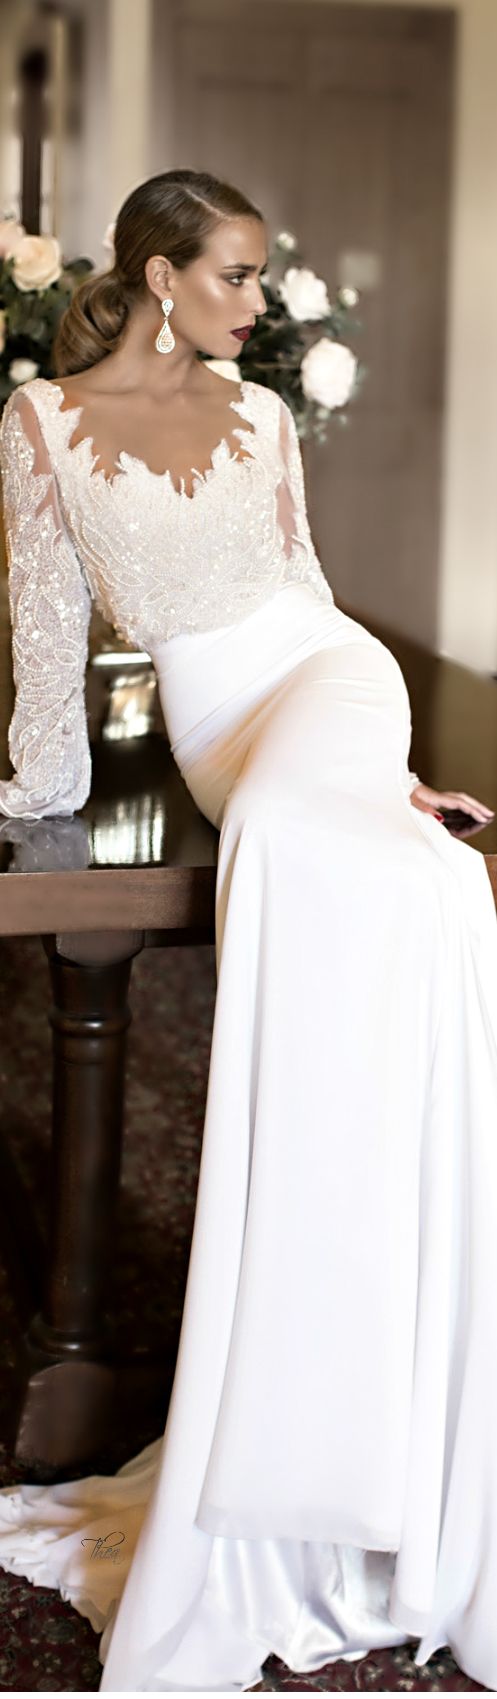 زفاف - Wedding Dress Board!